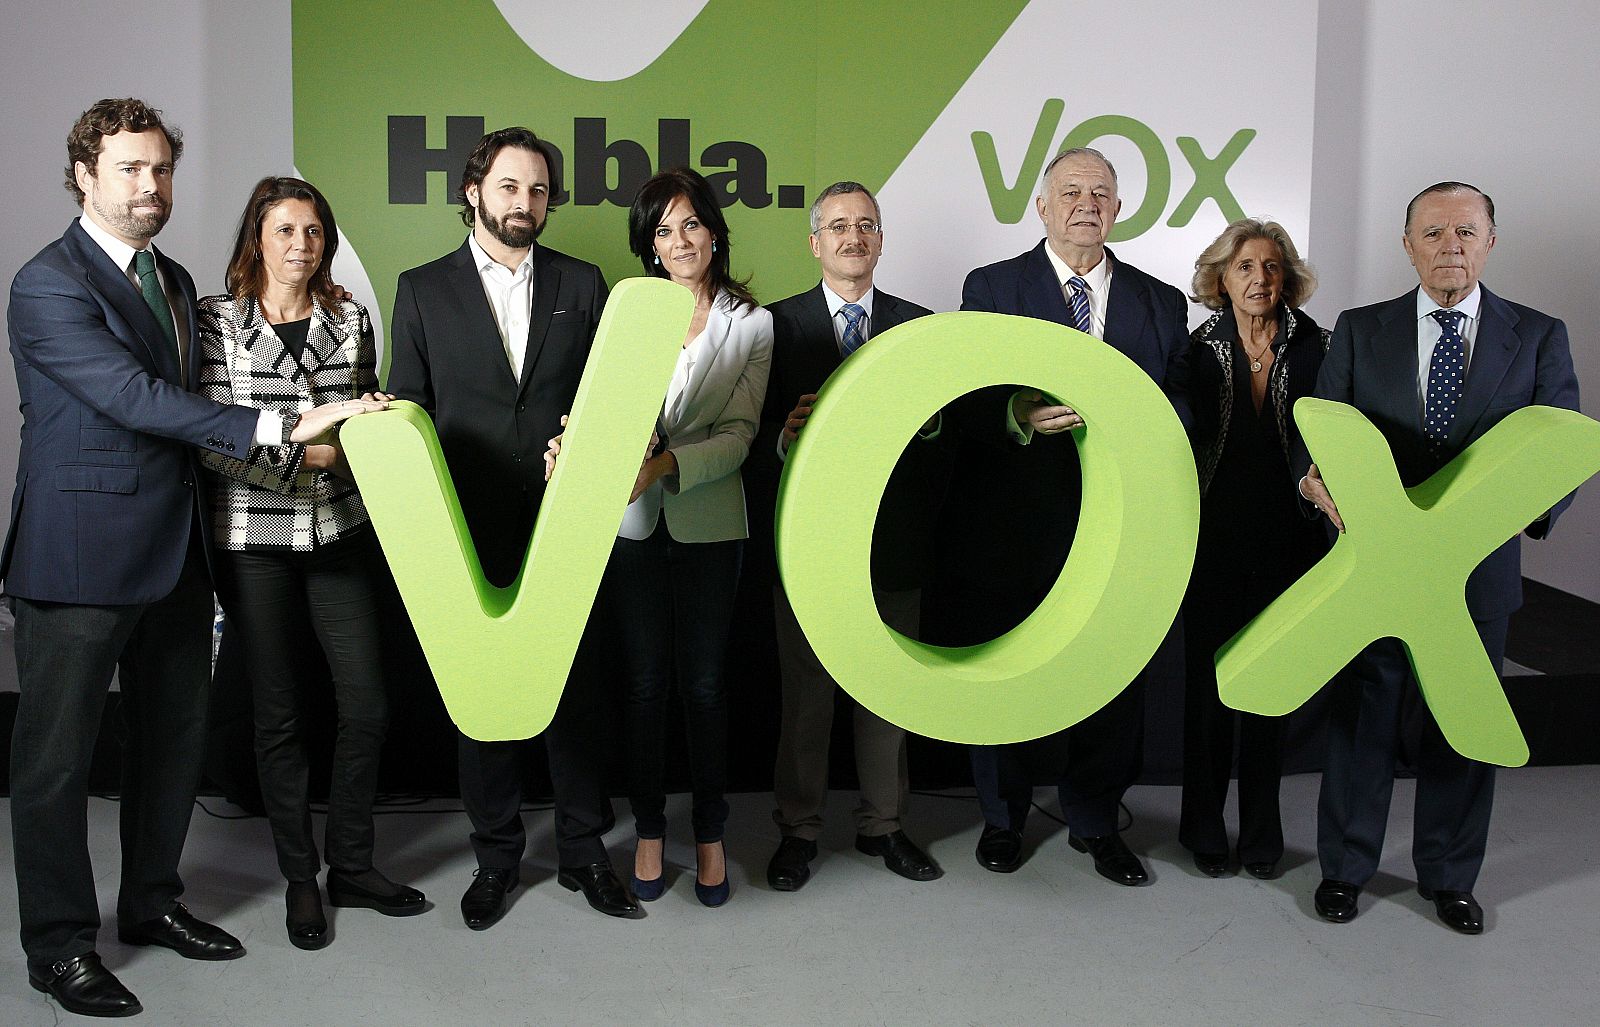 Presentación en Madrid del nuevo partido político de ámbito nacional Vox